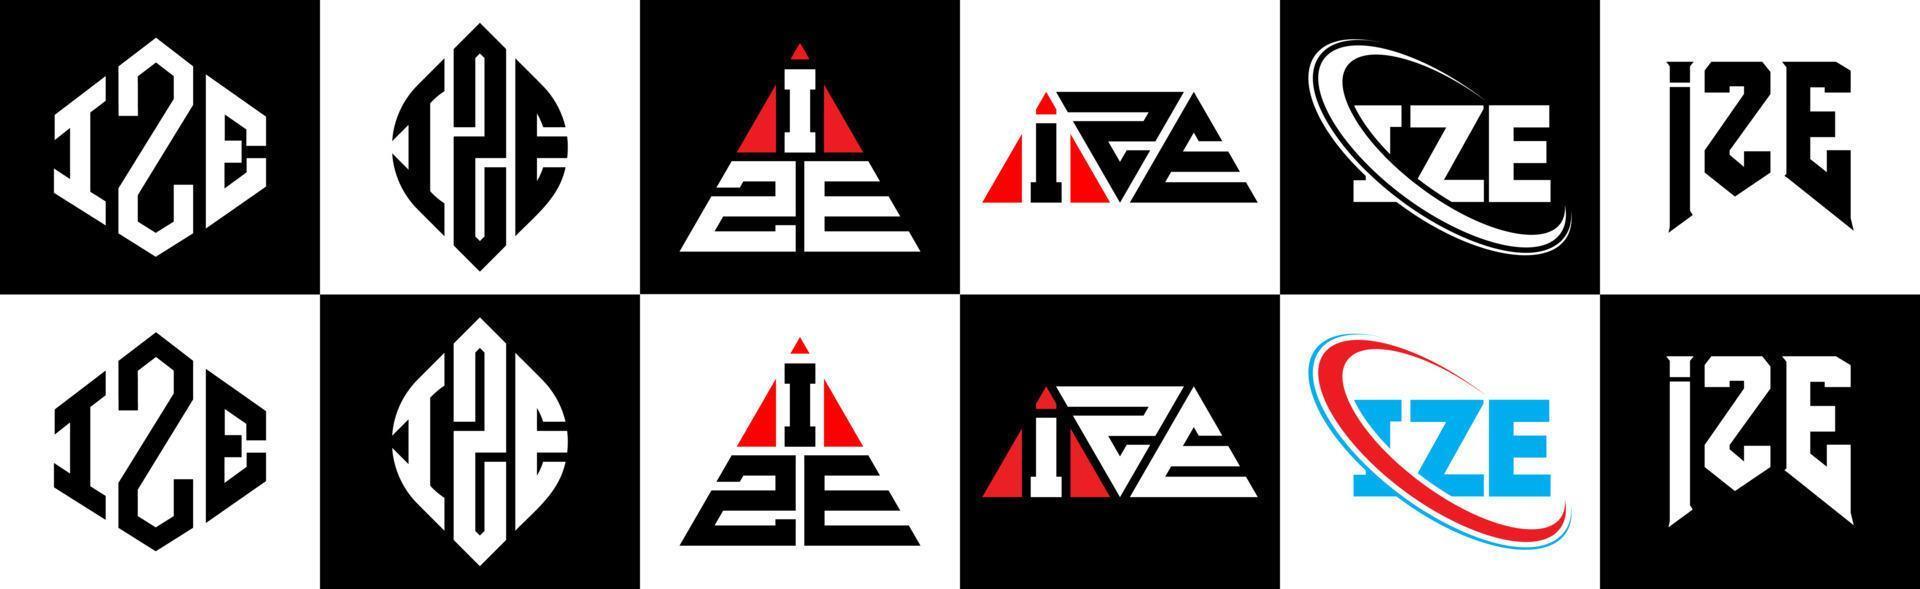 ize brief logo ontwerp in zes stijl. ize veelhoek, cirkel, driehoek, zeshoek, vlak en gemakkelijk stijl met zwart en wit kleur variatie brief logo reeks in een tekengebied. ize minimalistische en klassiek logo vector